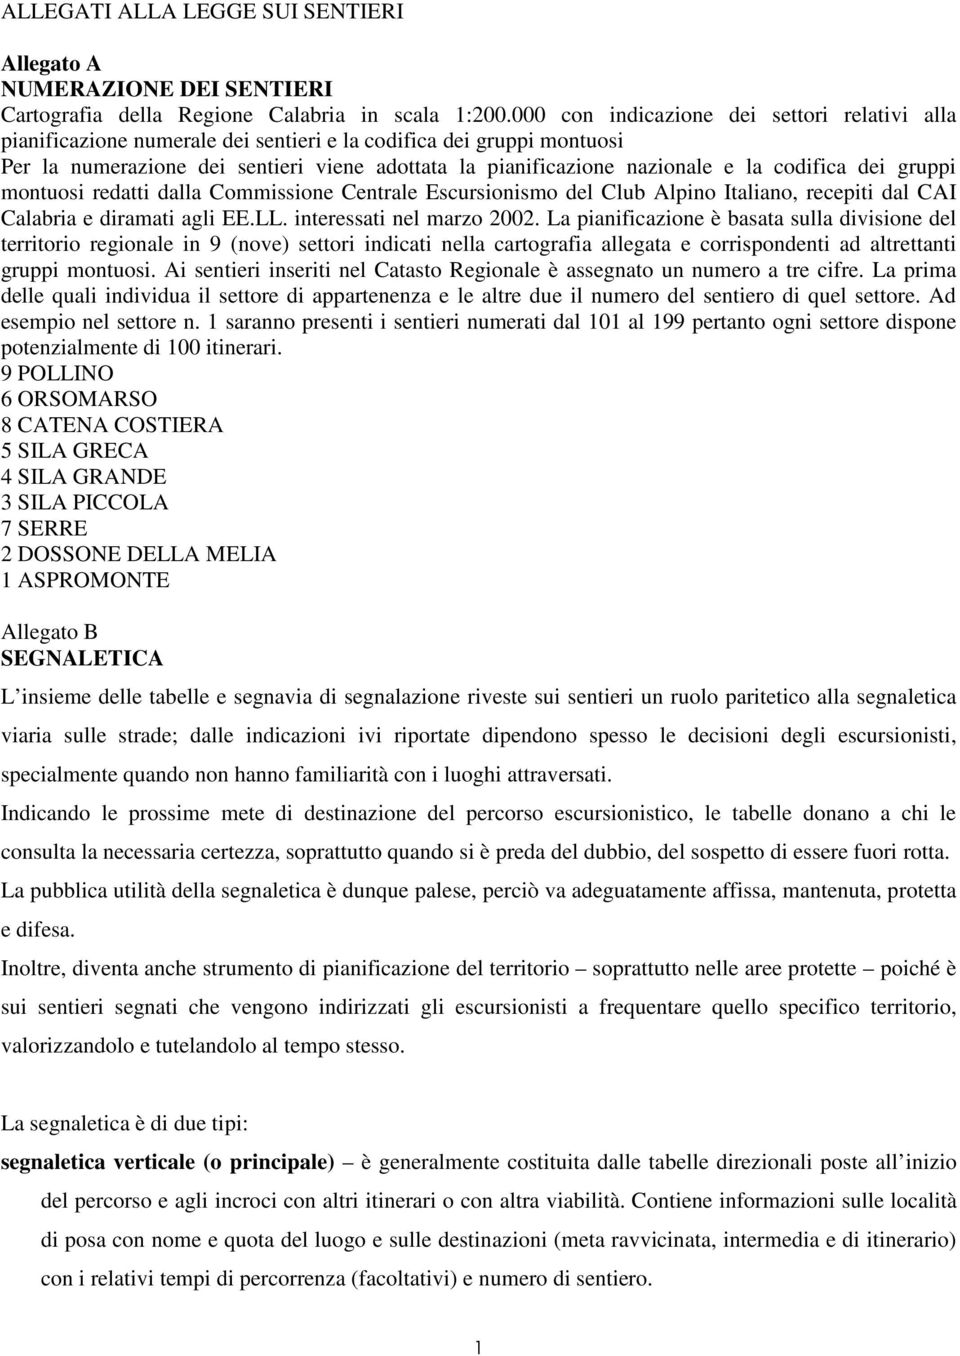 codifica dei gruppi montuosi redatti dalla Commissione Centrale Escursionismo del Club Alpino Italiano, recepiti dal CAI Calabria e diramati agli EE.LL. interessati nel marzo 2002.